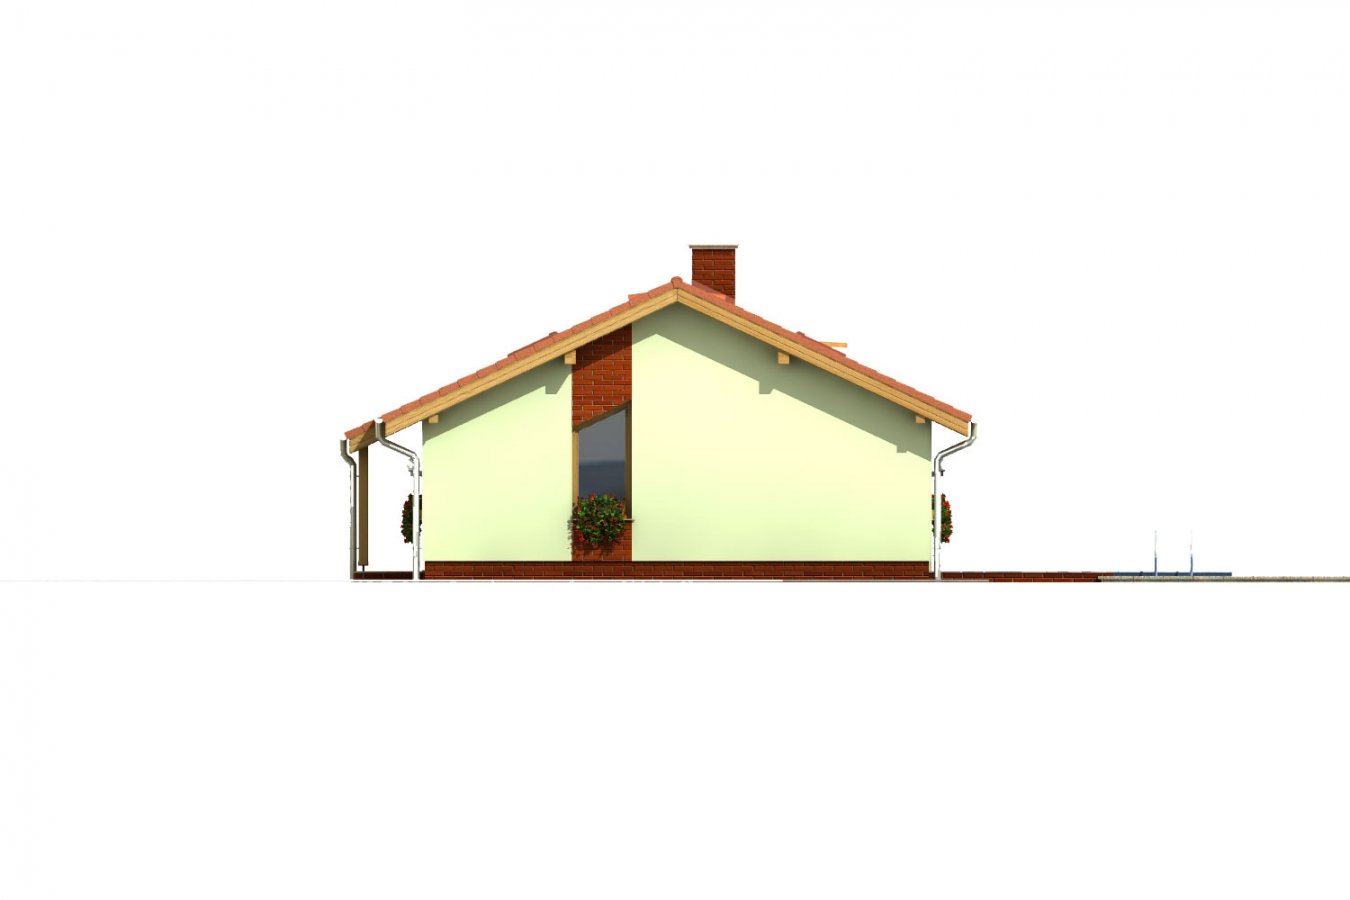 Pohľad 3. - Úzký rodinný dům s překrytou terasou, zpracovaný v 3d realitě.